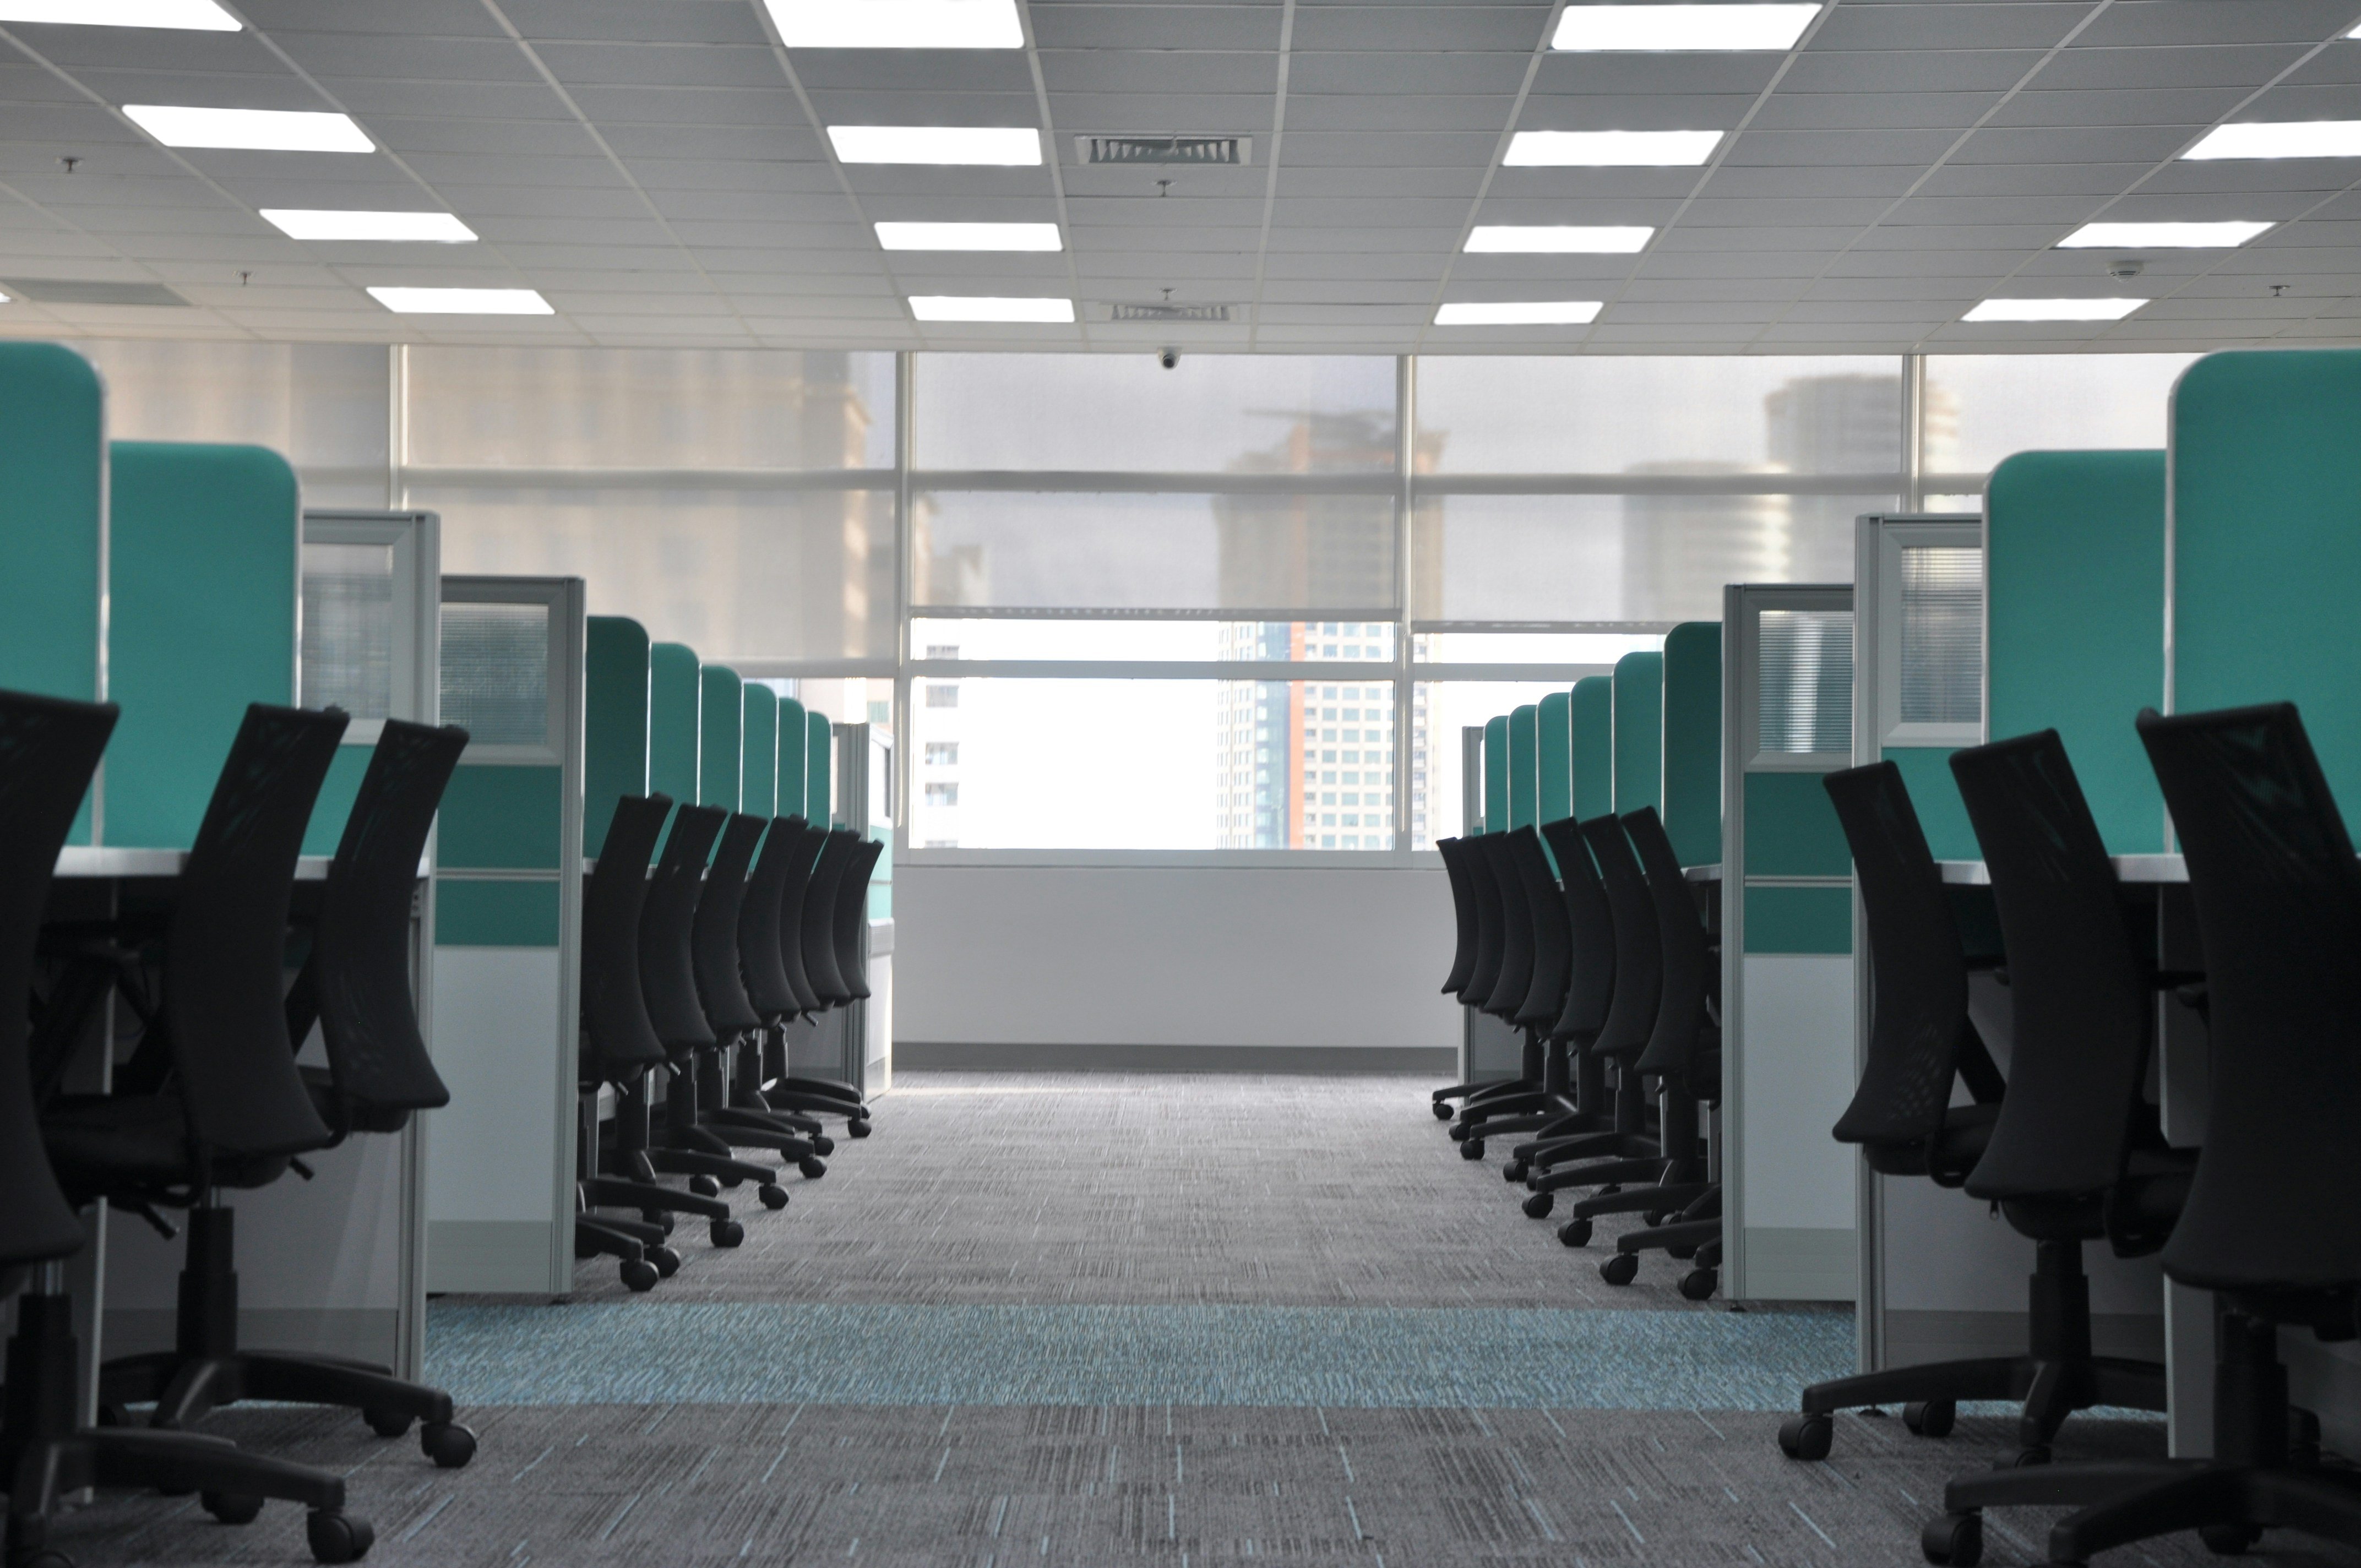 Panouri led - solutia ideala pentru iluminatul birourilor